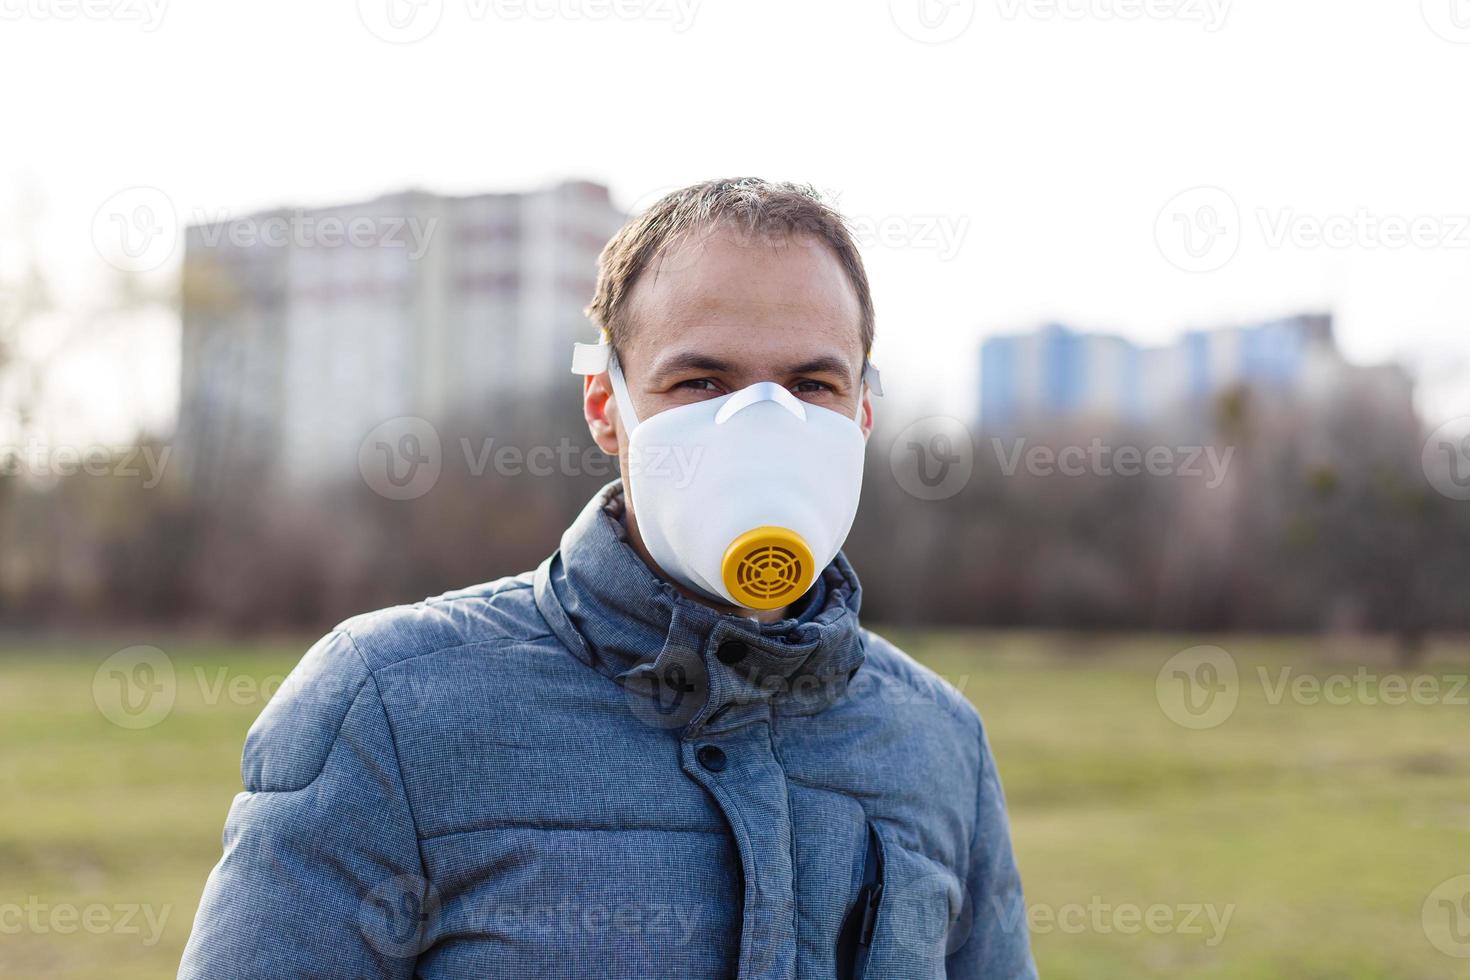 Aziatisch Mens vervelend de gezicht masker ten gevolge naar lucht verontreiniging - jong volwassen Aan park met verontreiniging masker - persoon beschermen van lucht besmetting of coronavirus of covid-19 door vervelend masker. foto